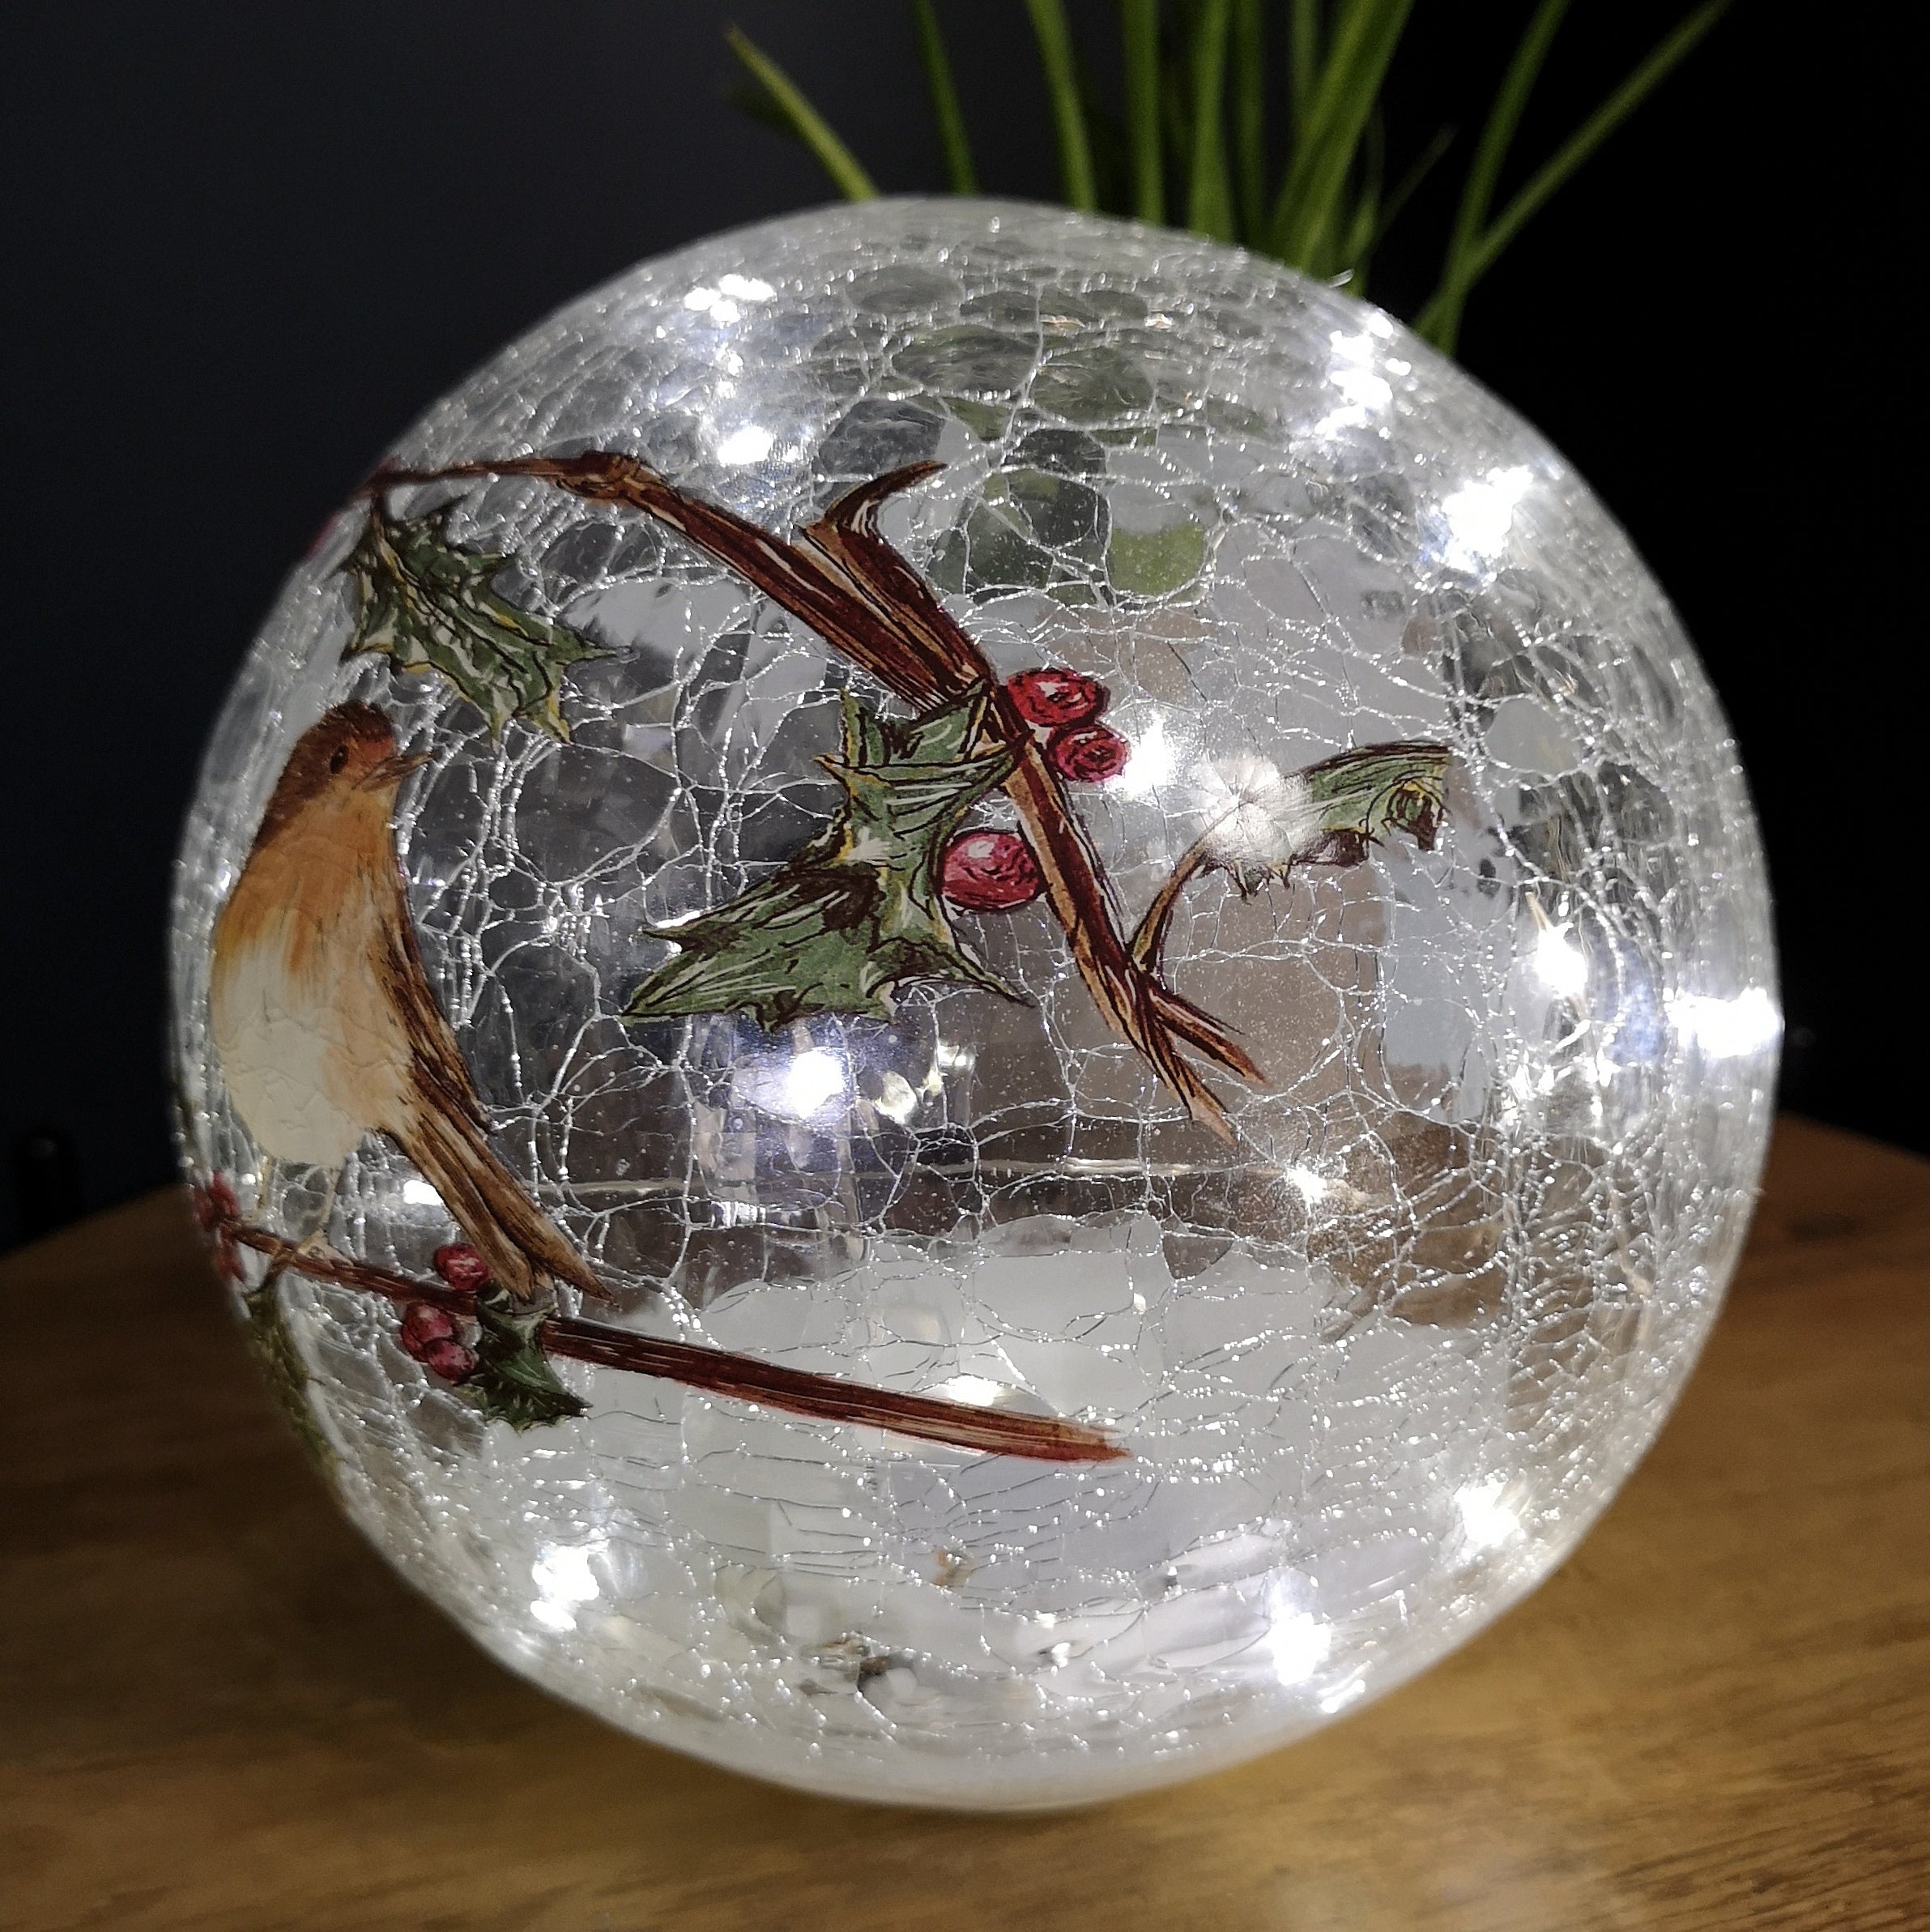 20cm Festive Christmas Crackle Effect Glass Robin LED Light Ball